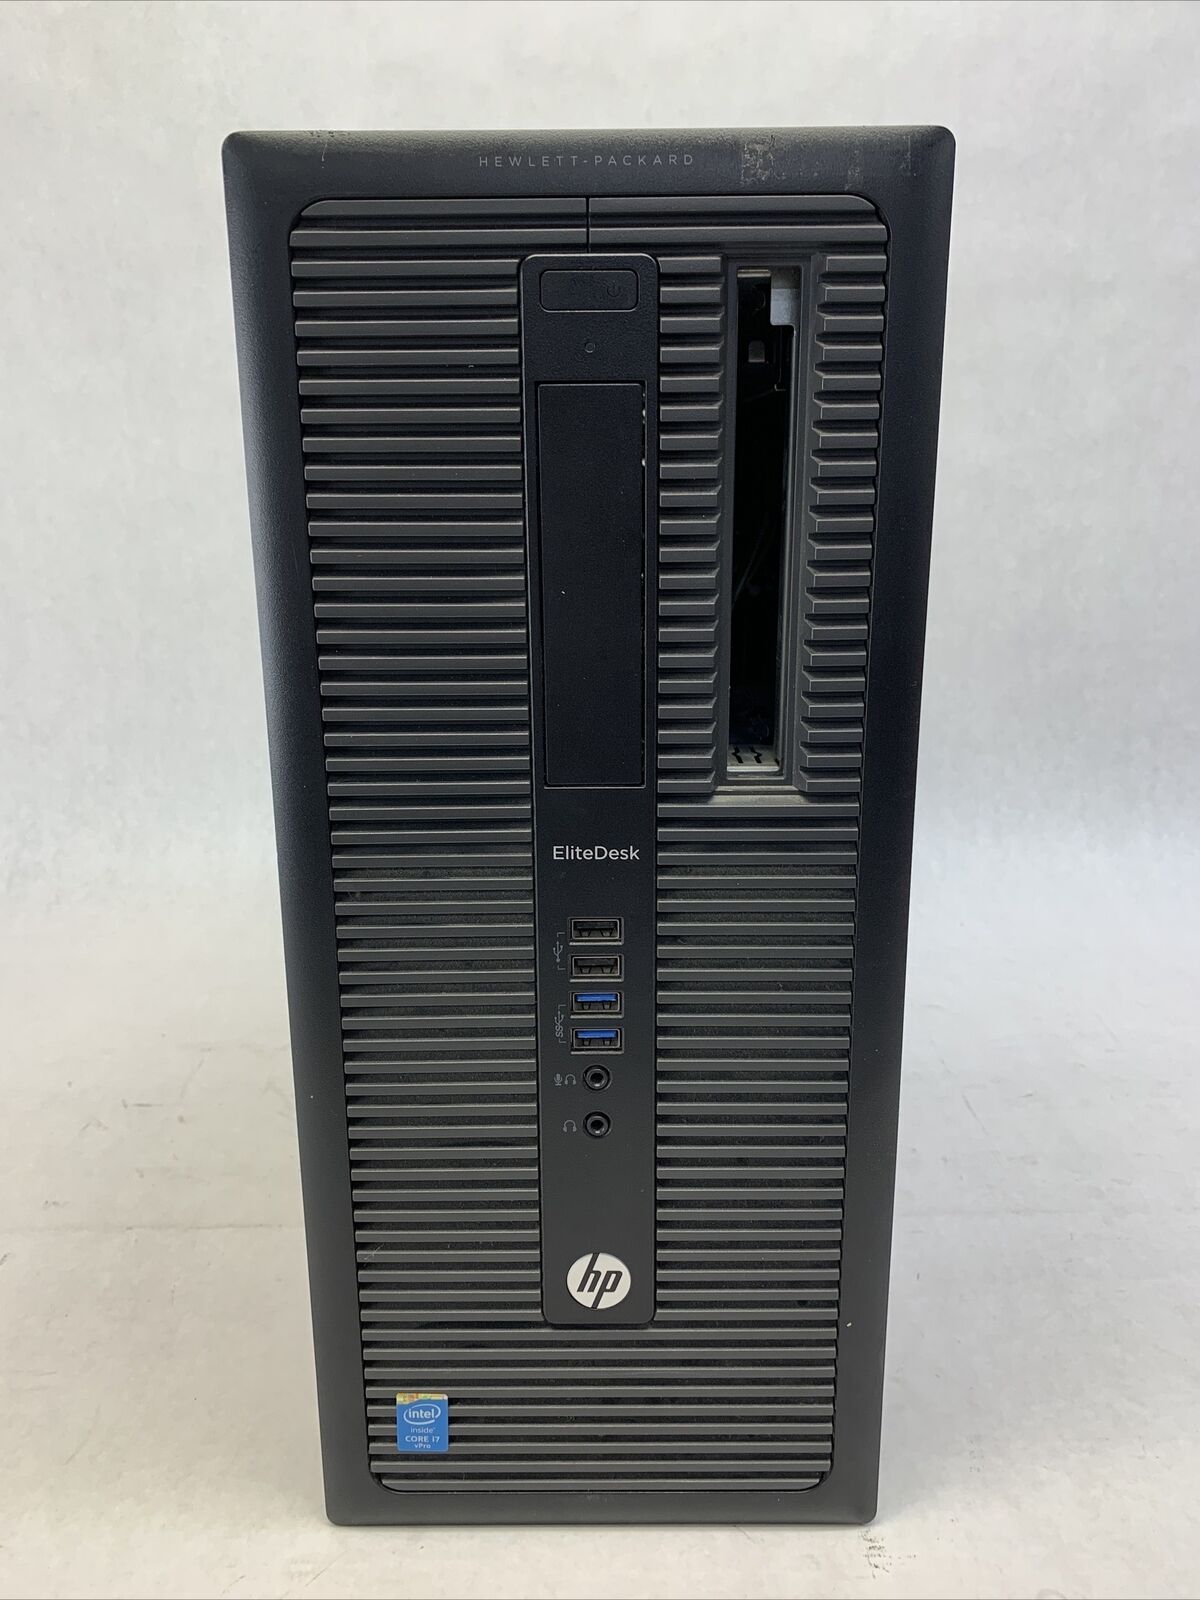 HP EliteDesk 500 G1 TWR Intel Core i7-4790 3.6GHz 8GB RAM No HDD No OS